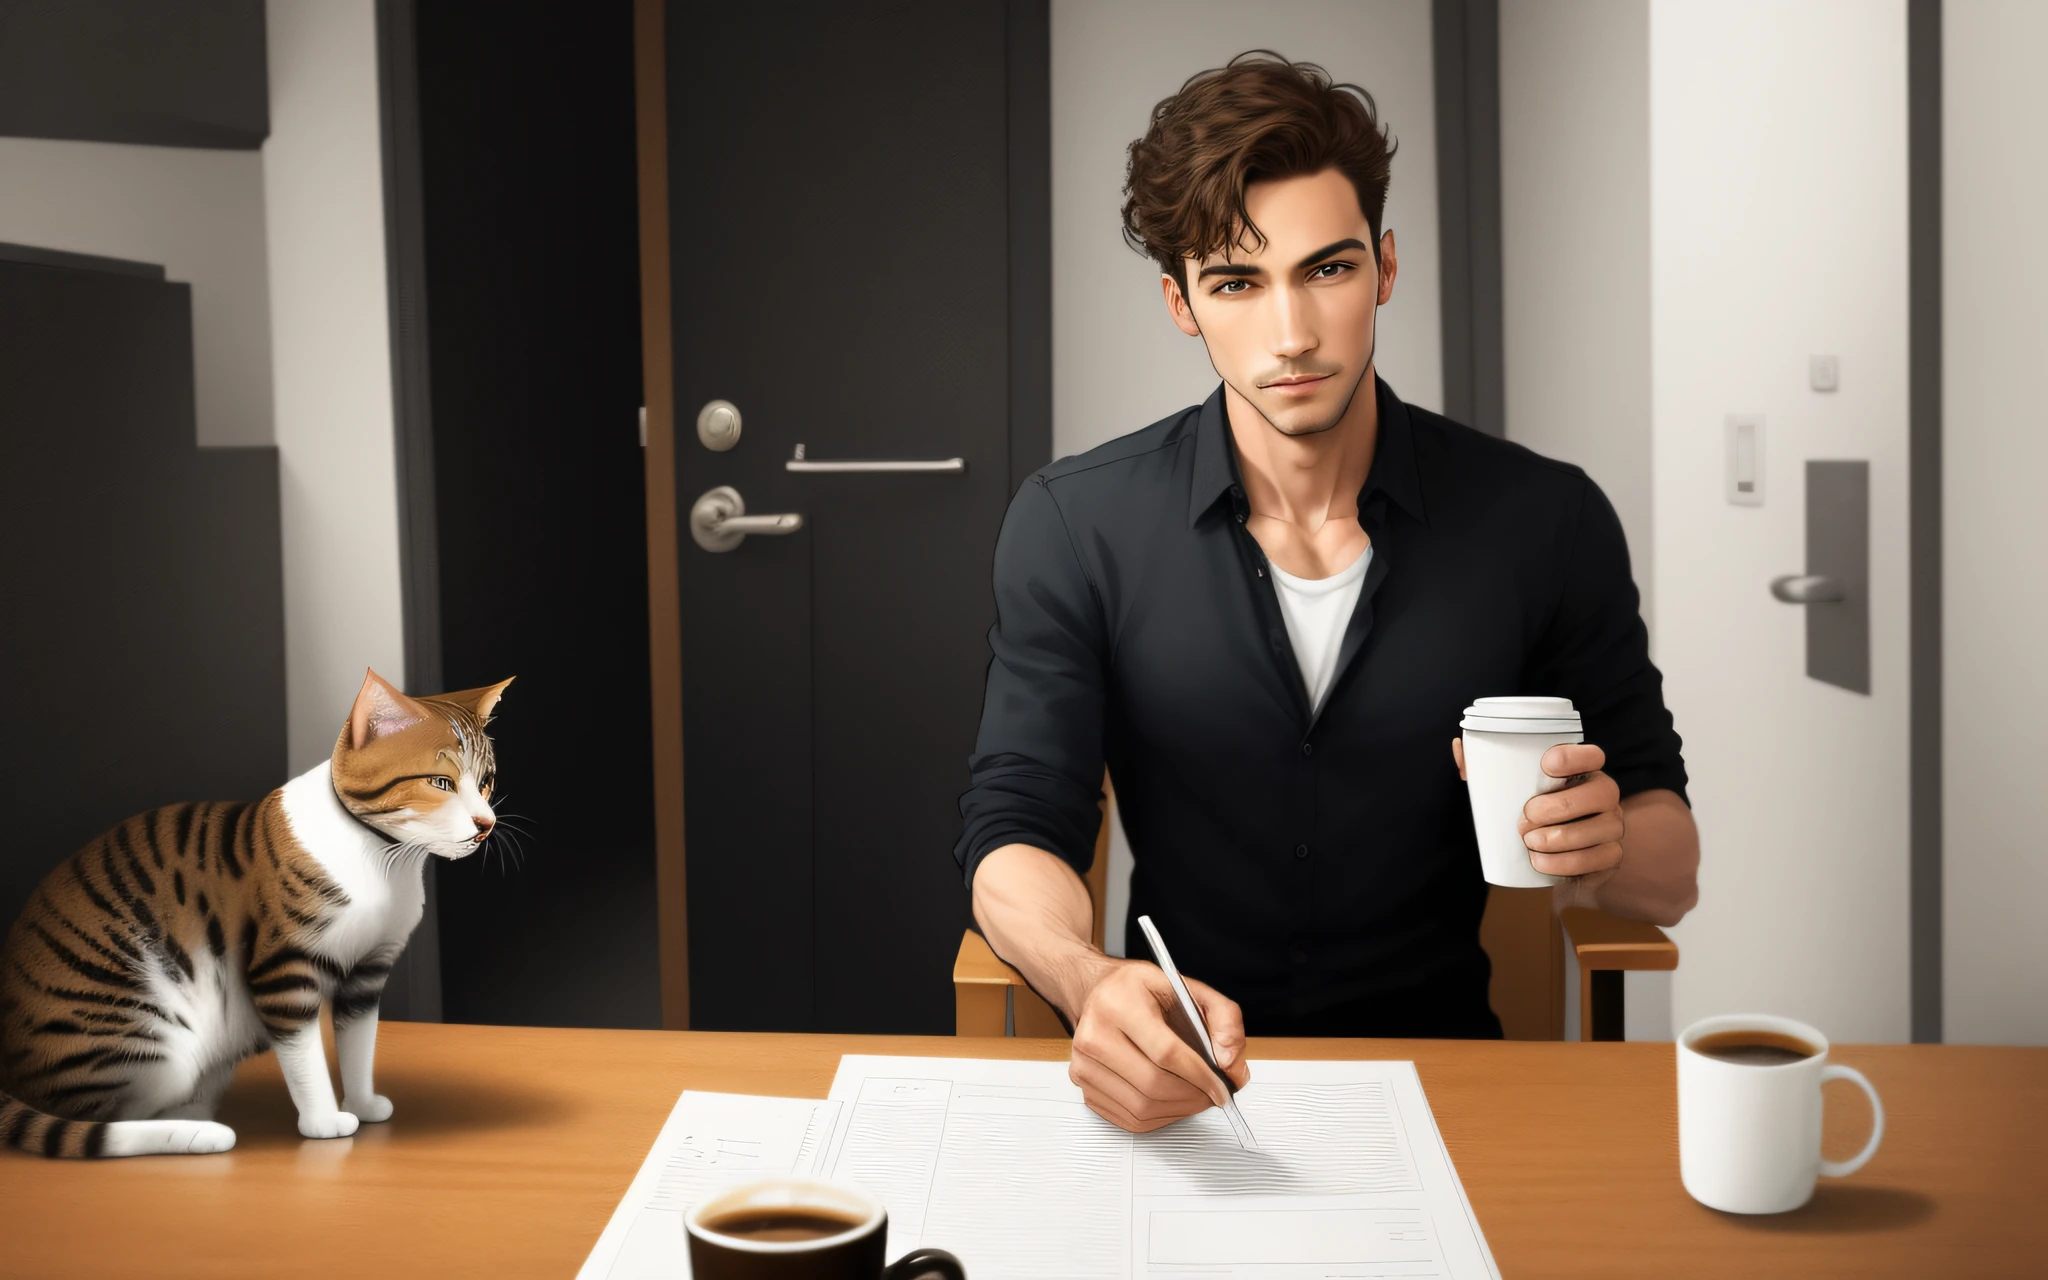 一個全身直立行走的人,  拿著一杯咖啡, 一隻貓跟隨與人類相同的方向, 卡通風格,  只是一個男人. 細緻逼真的真實影像.